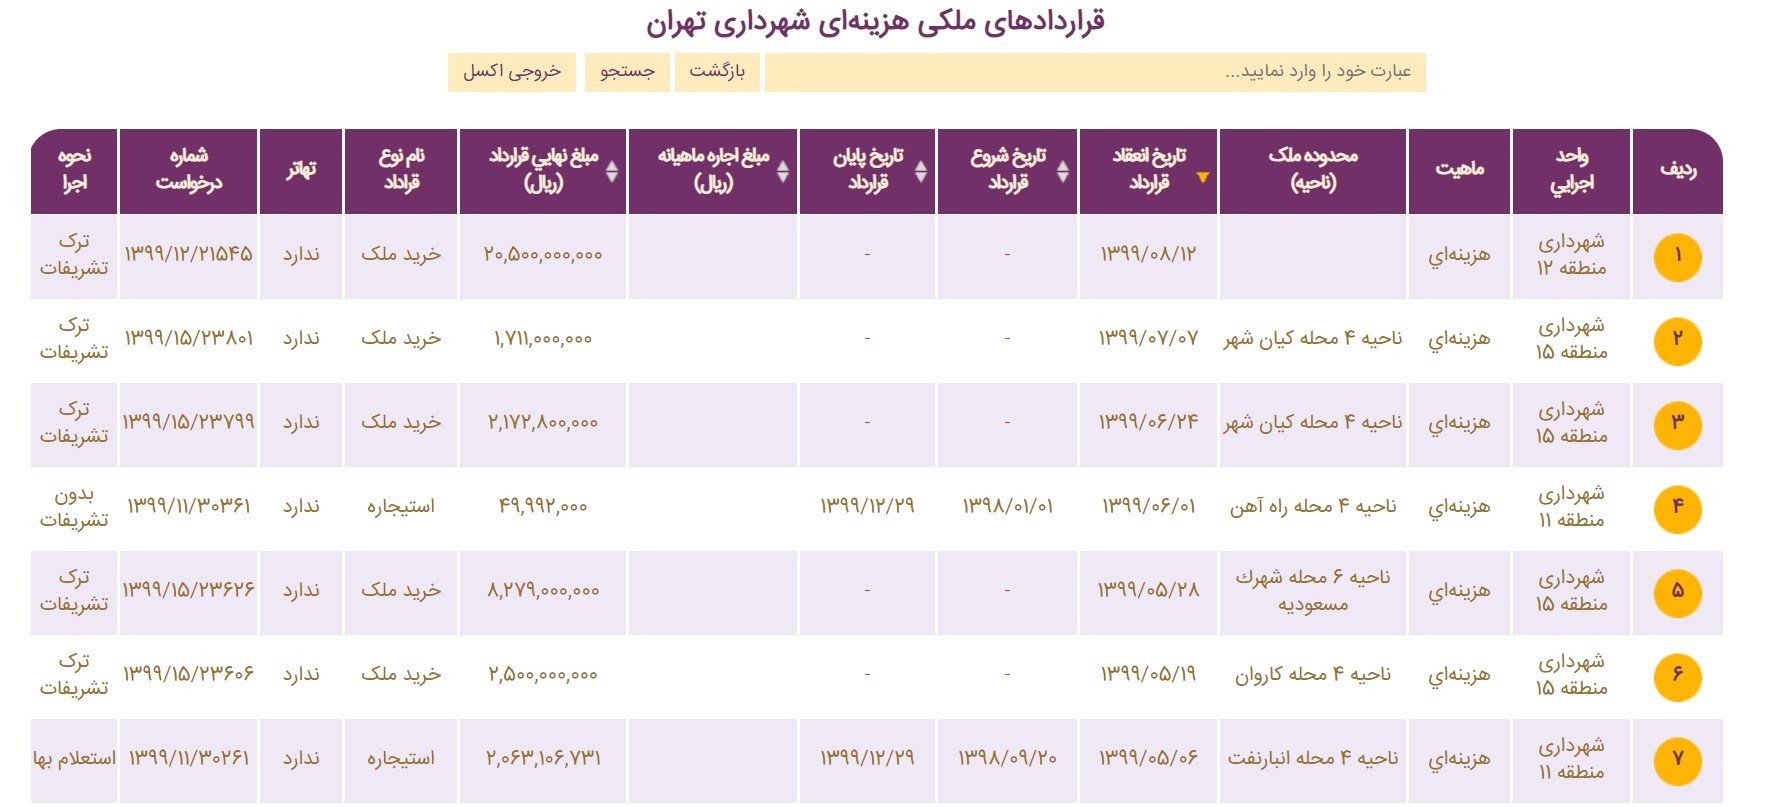 اطلاعات قراردادهای ملکی شهرداری تهران روی وبسایت شفافیت شهرداری منتشر شد.